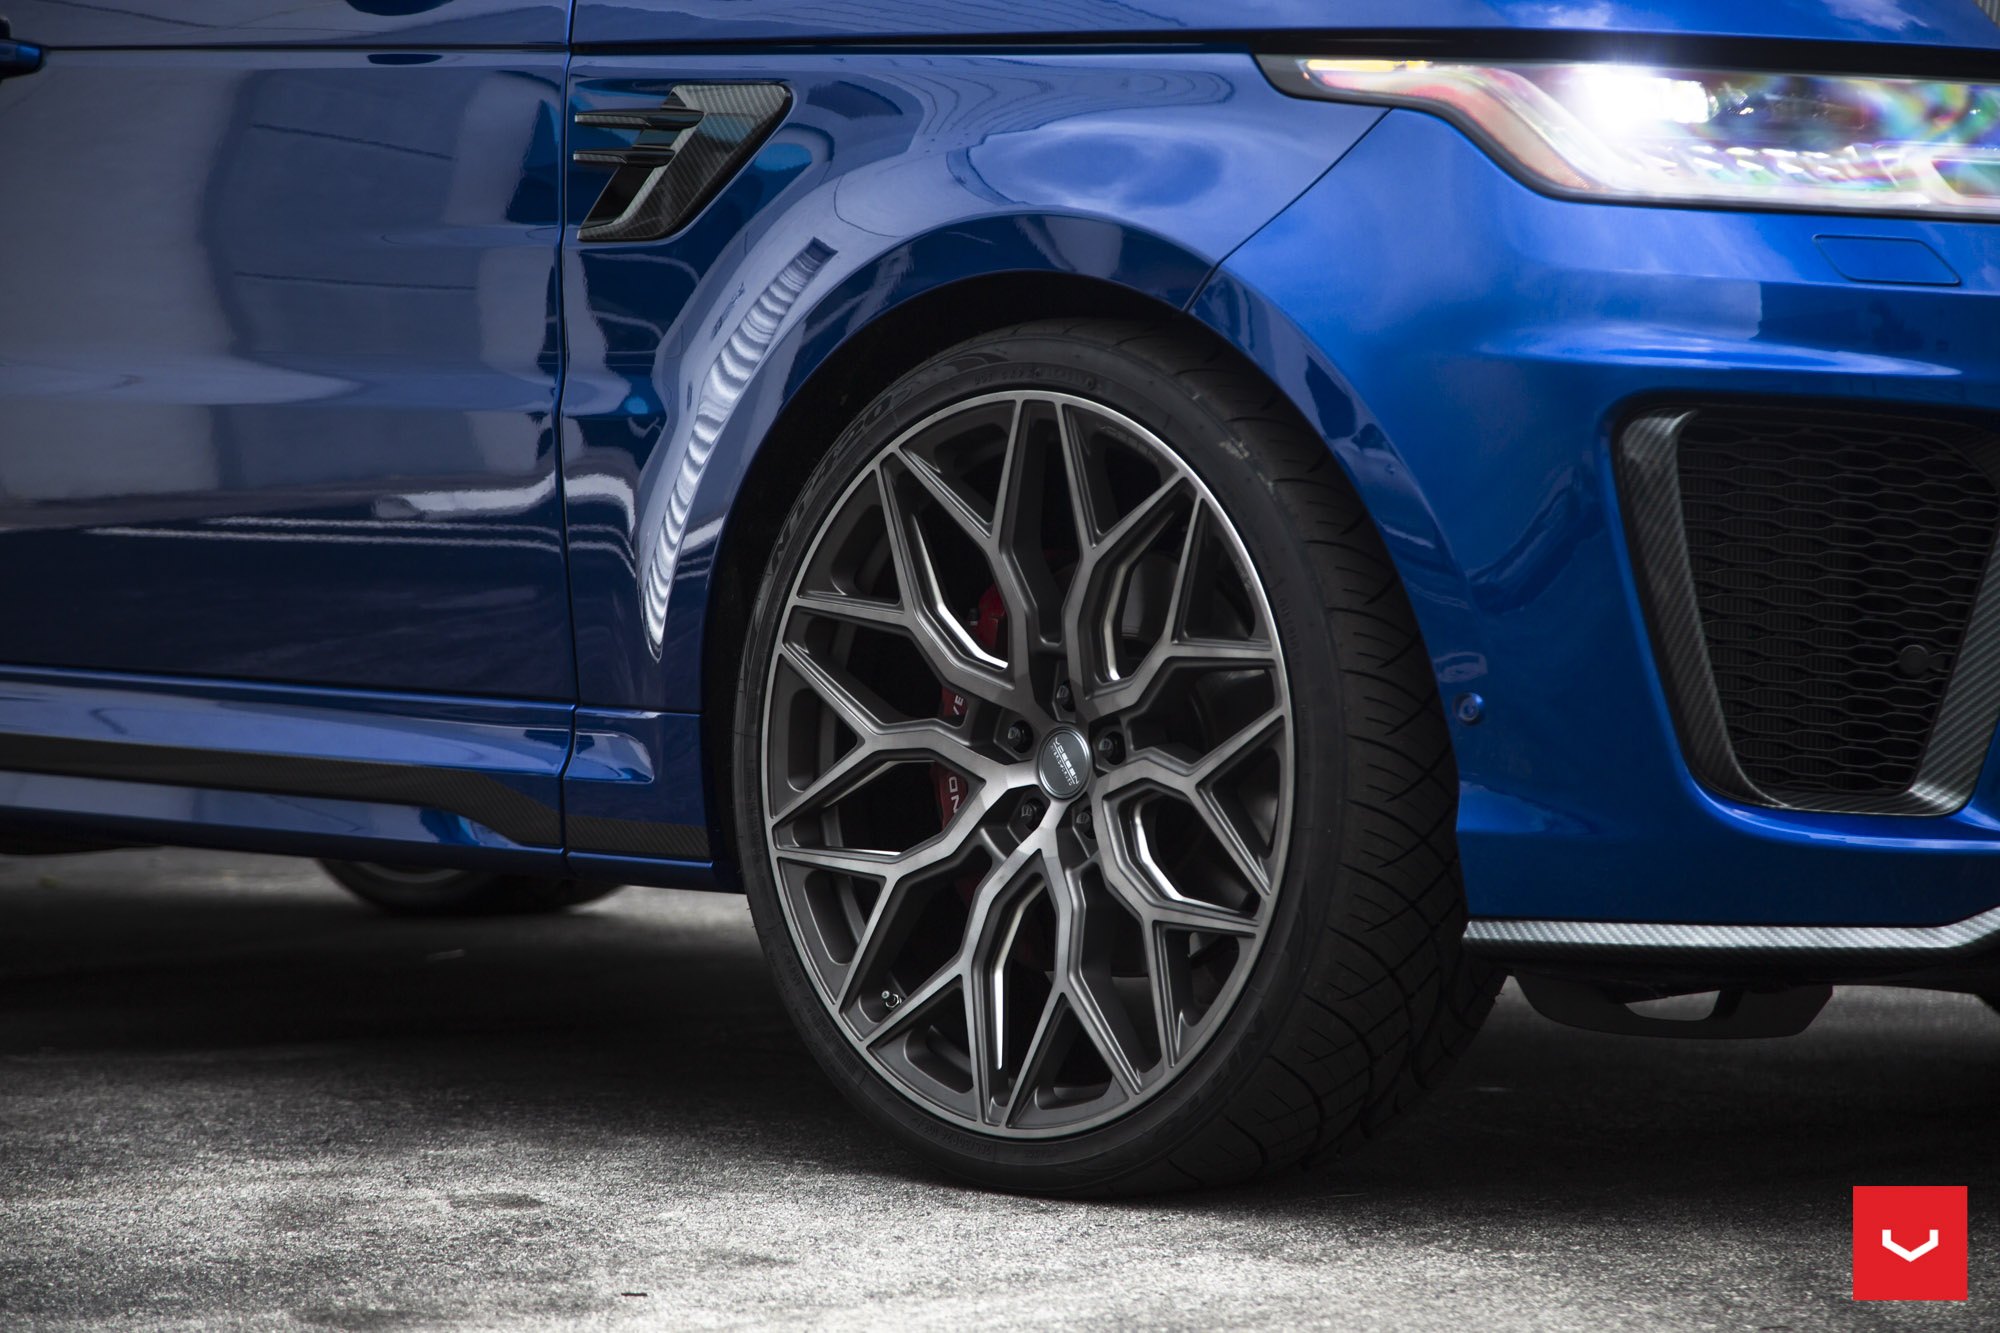 Blue Range Rover Sport with Custom Vossen Wheels - Photo by Vossen